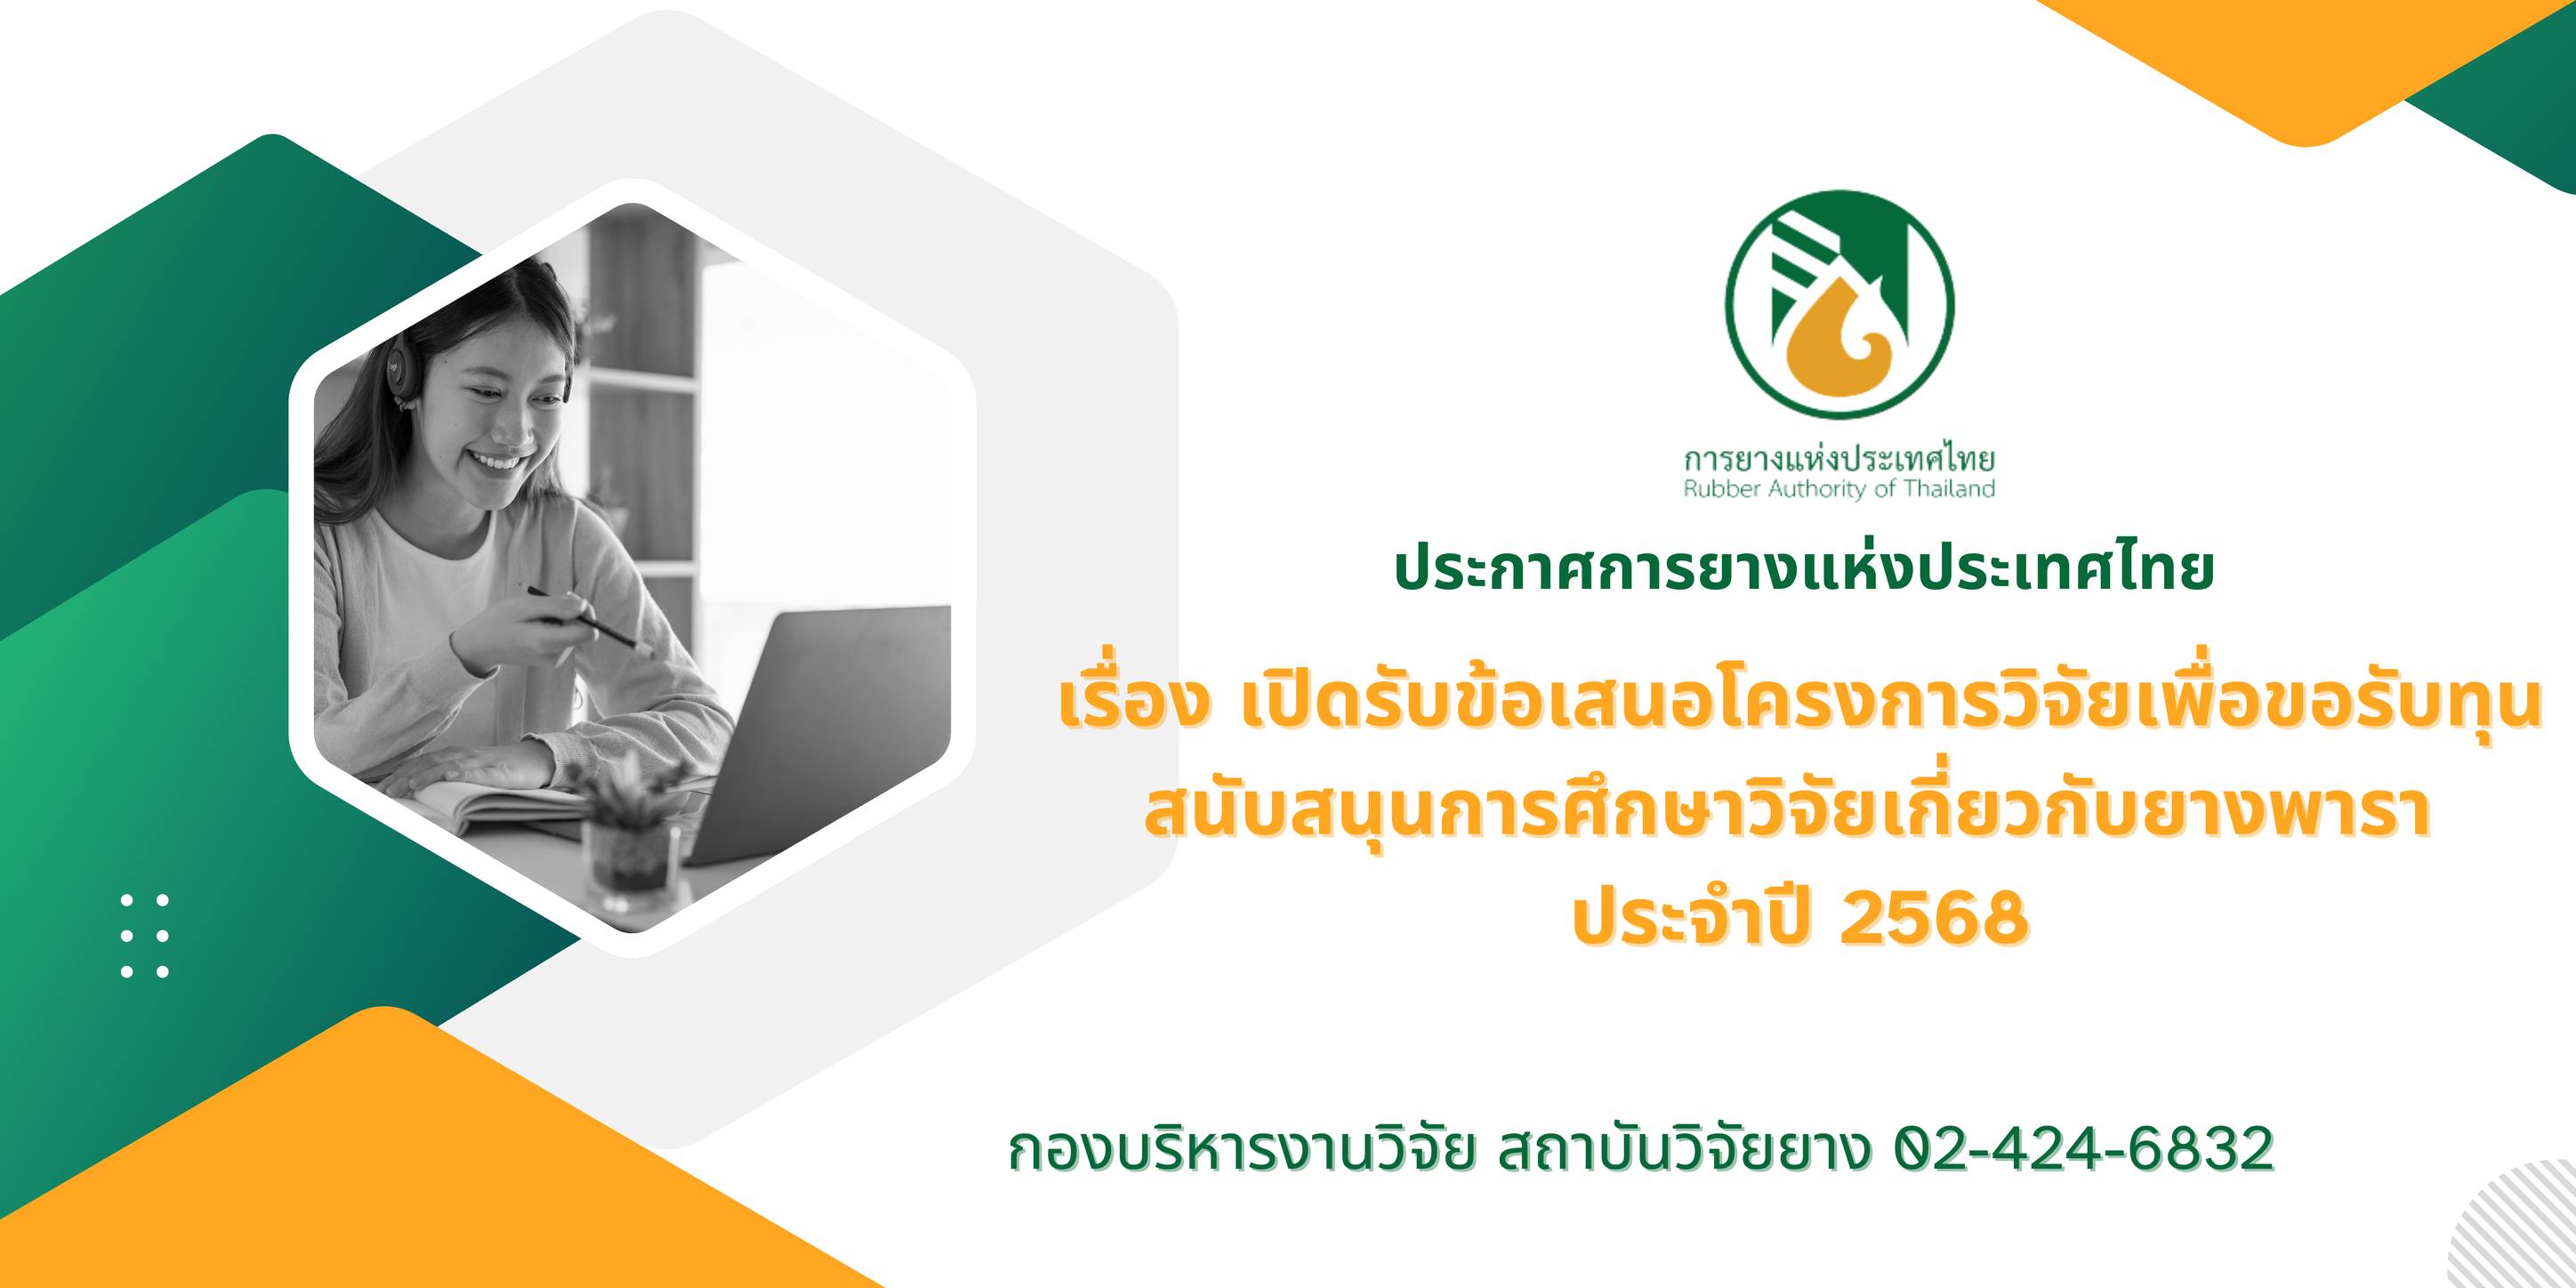 การยางแห่งประเทศไทยประกาศรับข้อเสนอโครงการวิจัยเพื่อขอรับทุนสนับสนุนการศึกษาวิจัยเกี่ยวกับยางพารา ประจำปี 2568